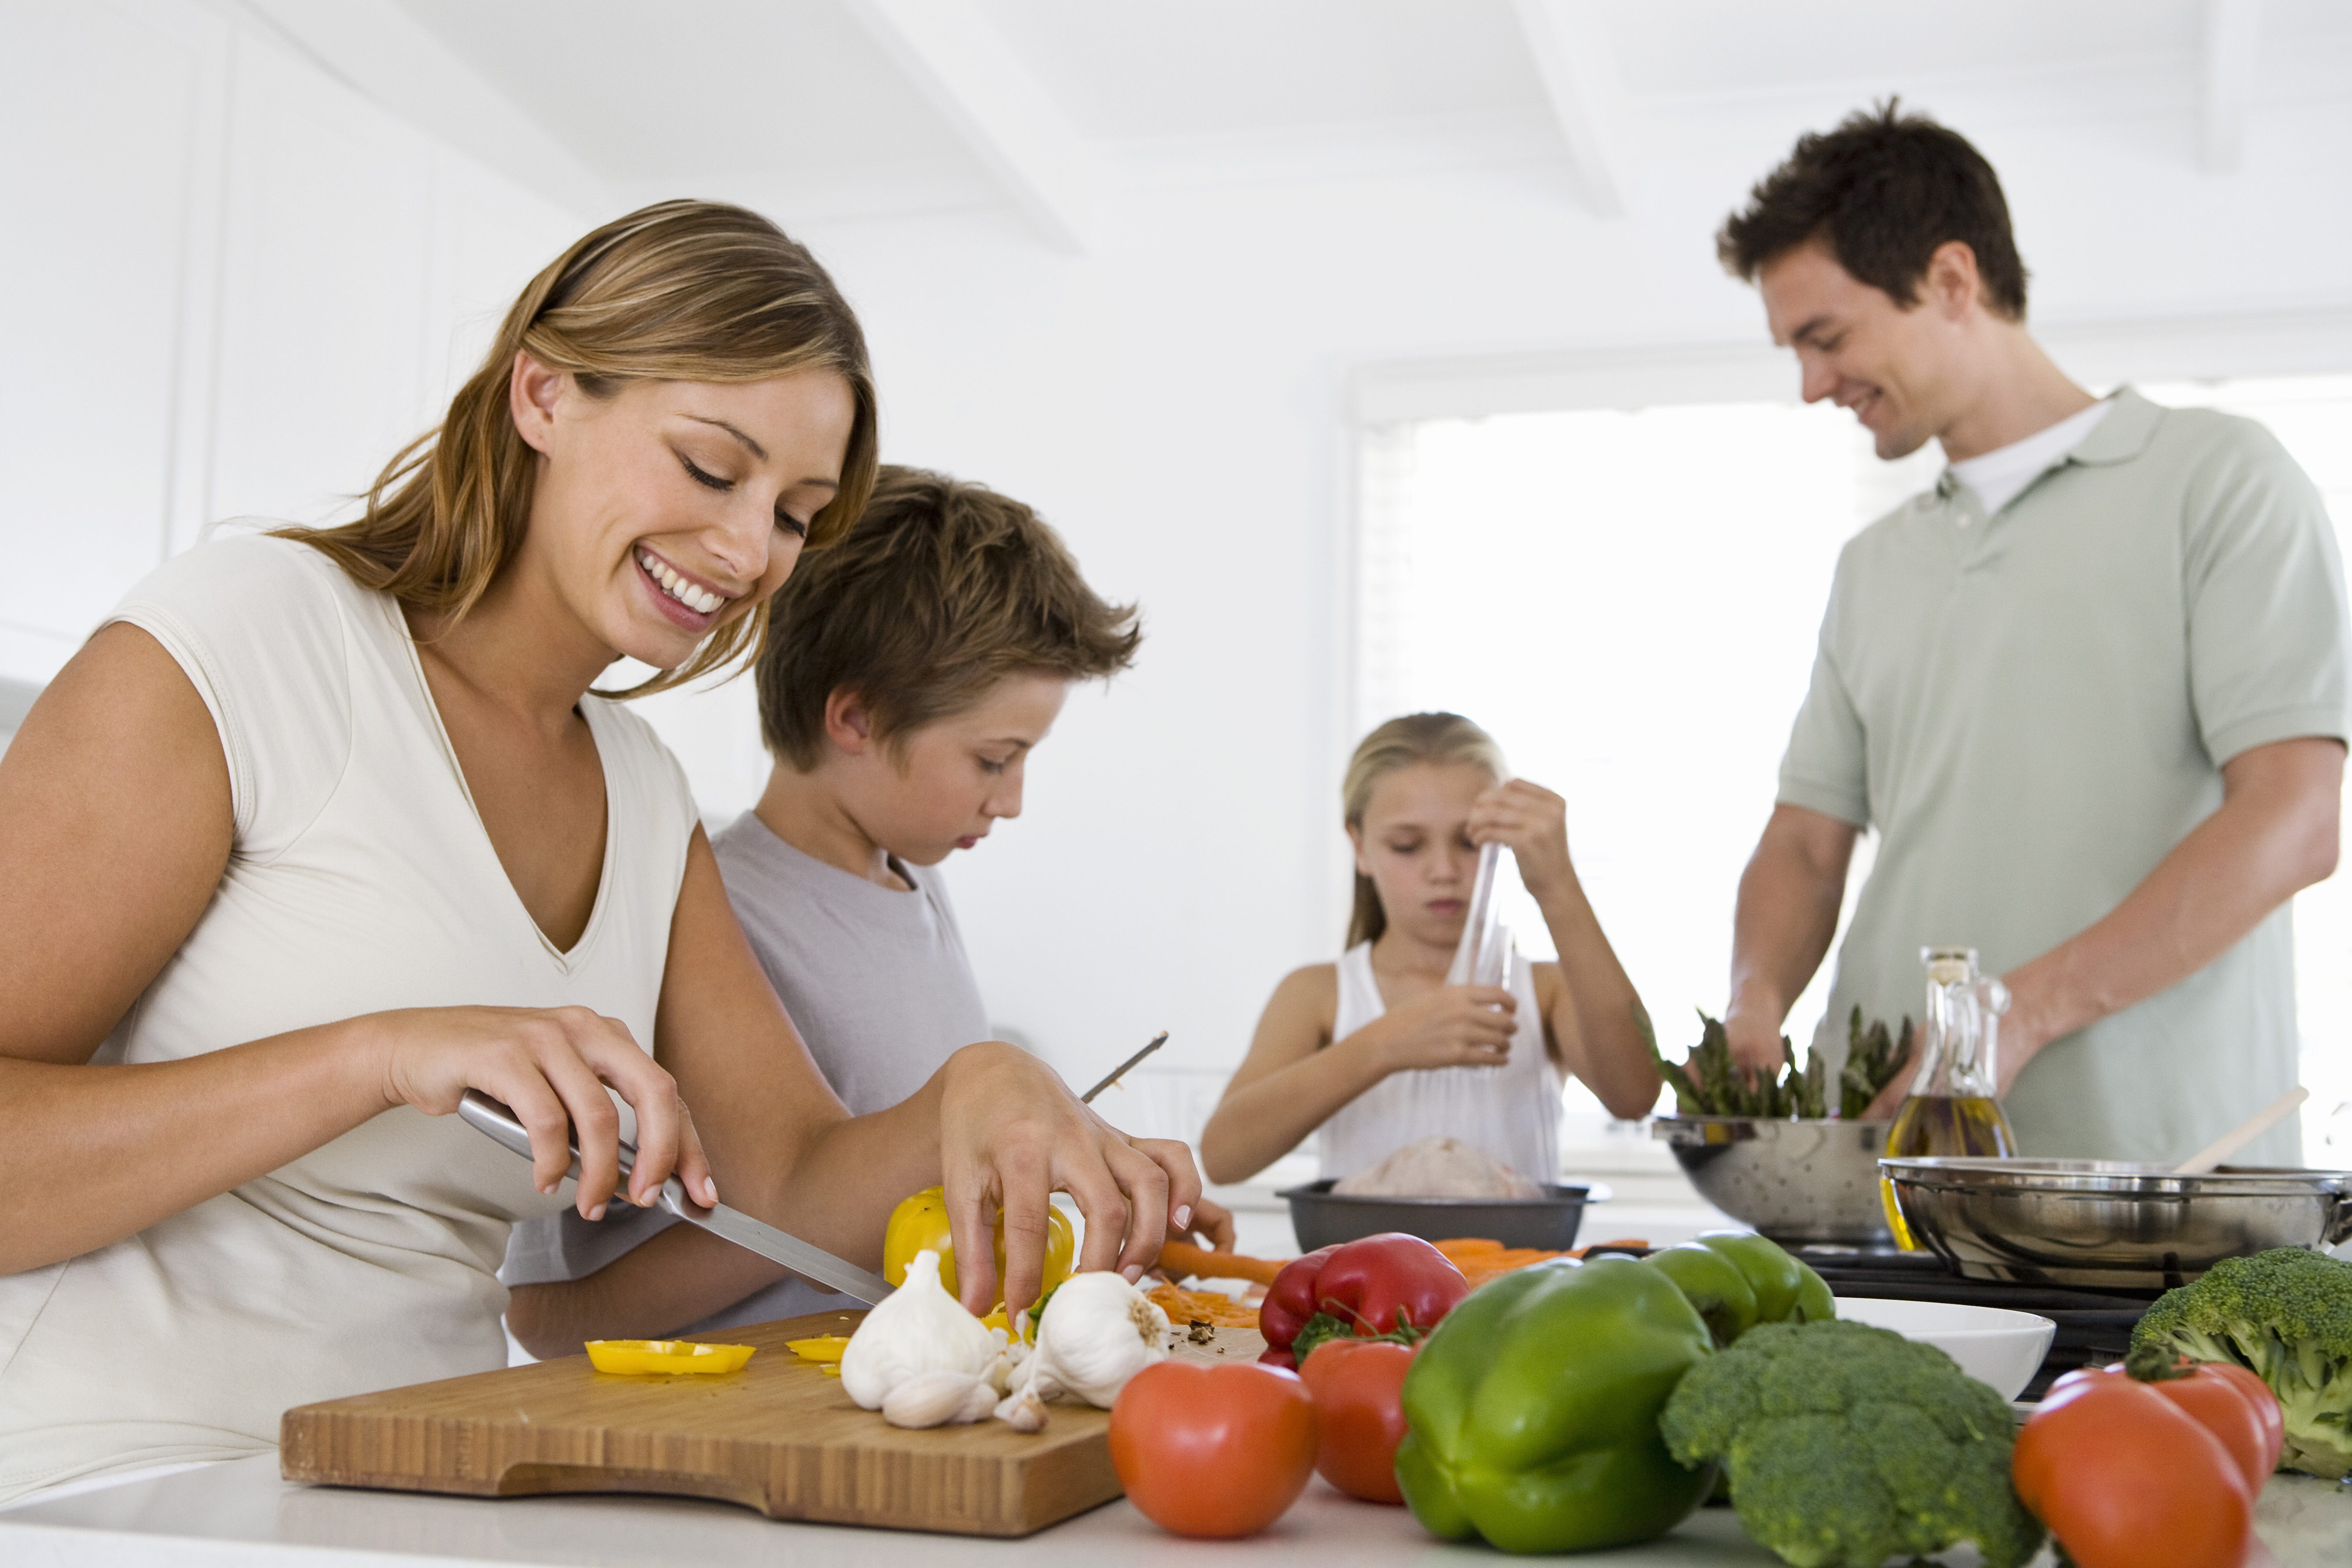 Социально активная семья. Здоровый образ жизни в скиье. Здоровое питание в семье. Домашнее хозяйство. Правильное питание семья.